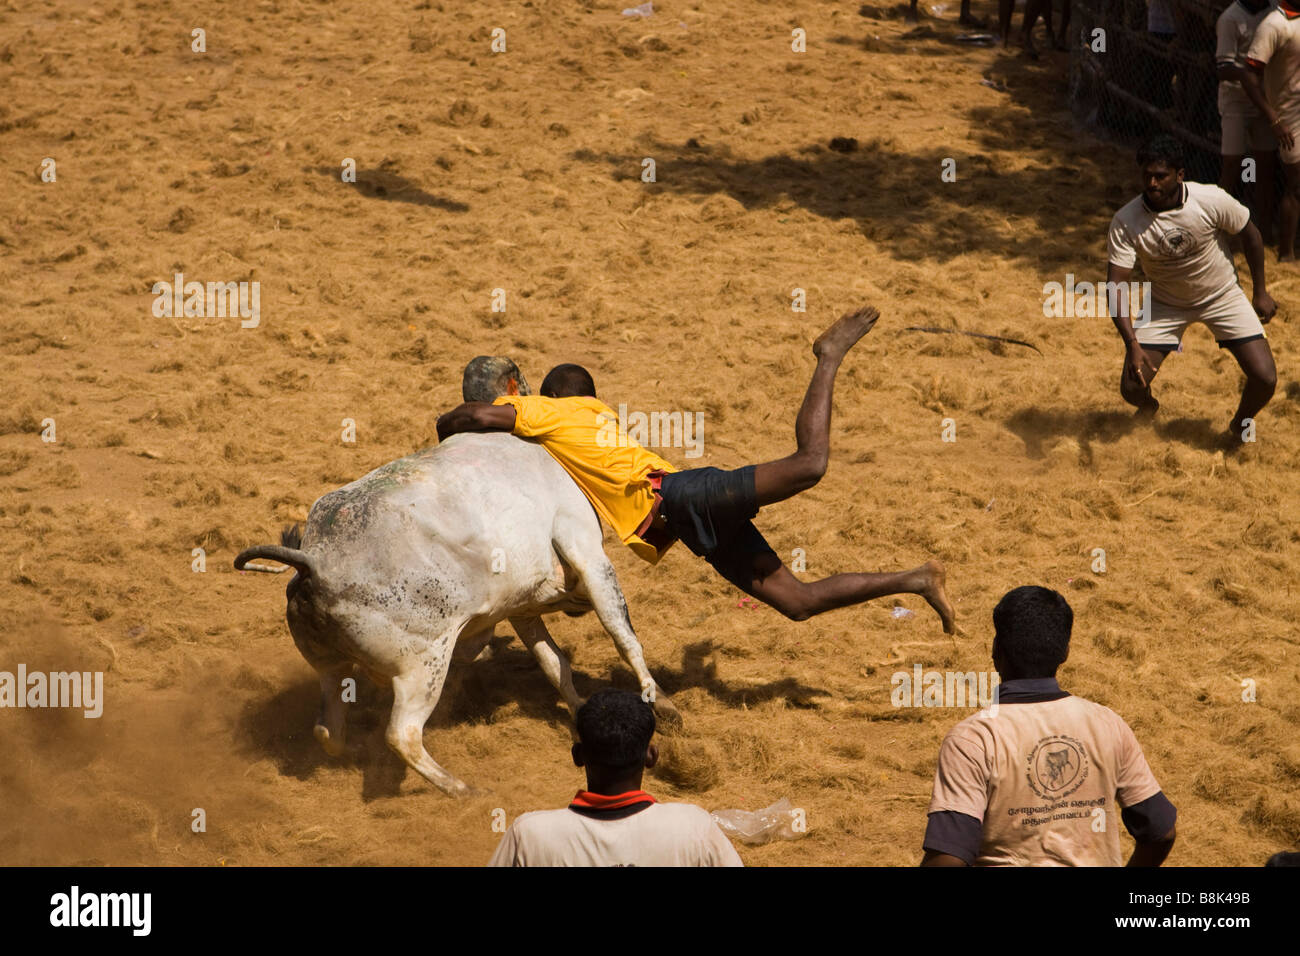 Indien Tamil Nadu Allanganallur jährlichen Pongal Jallikkattu Stierkampf Aktion Mensch Bull festhalten Stockfoto